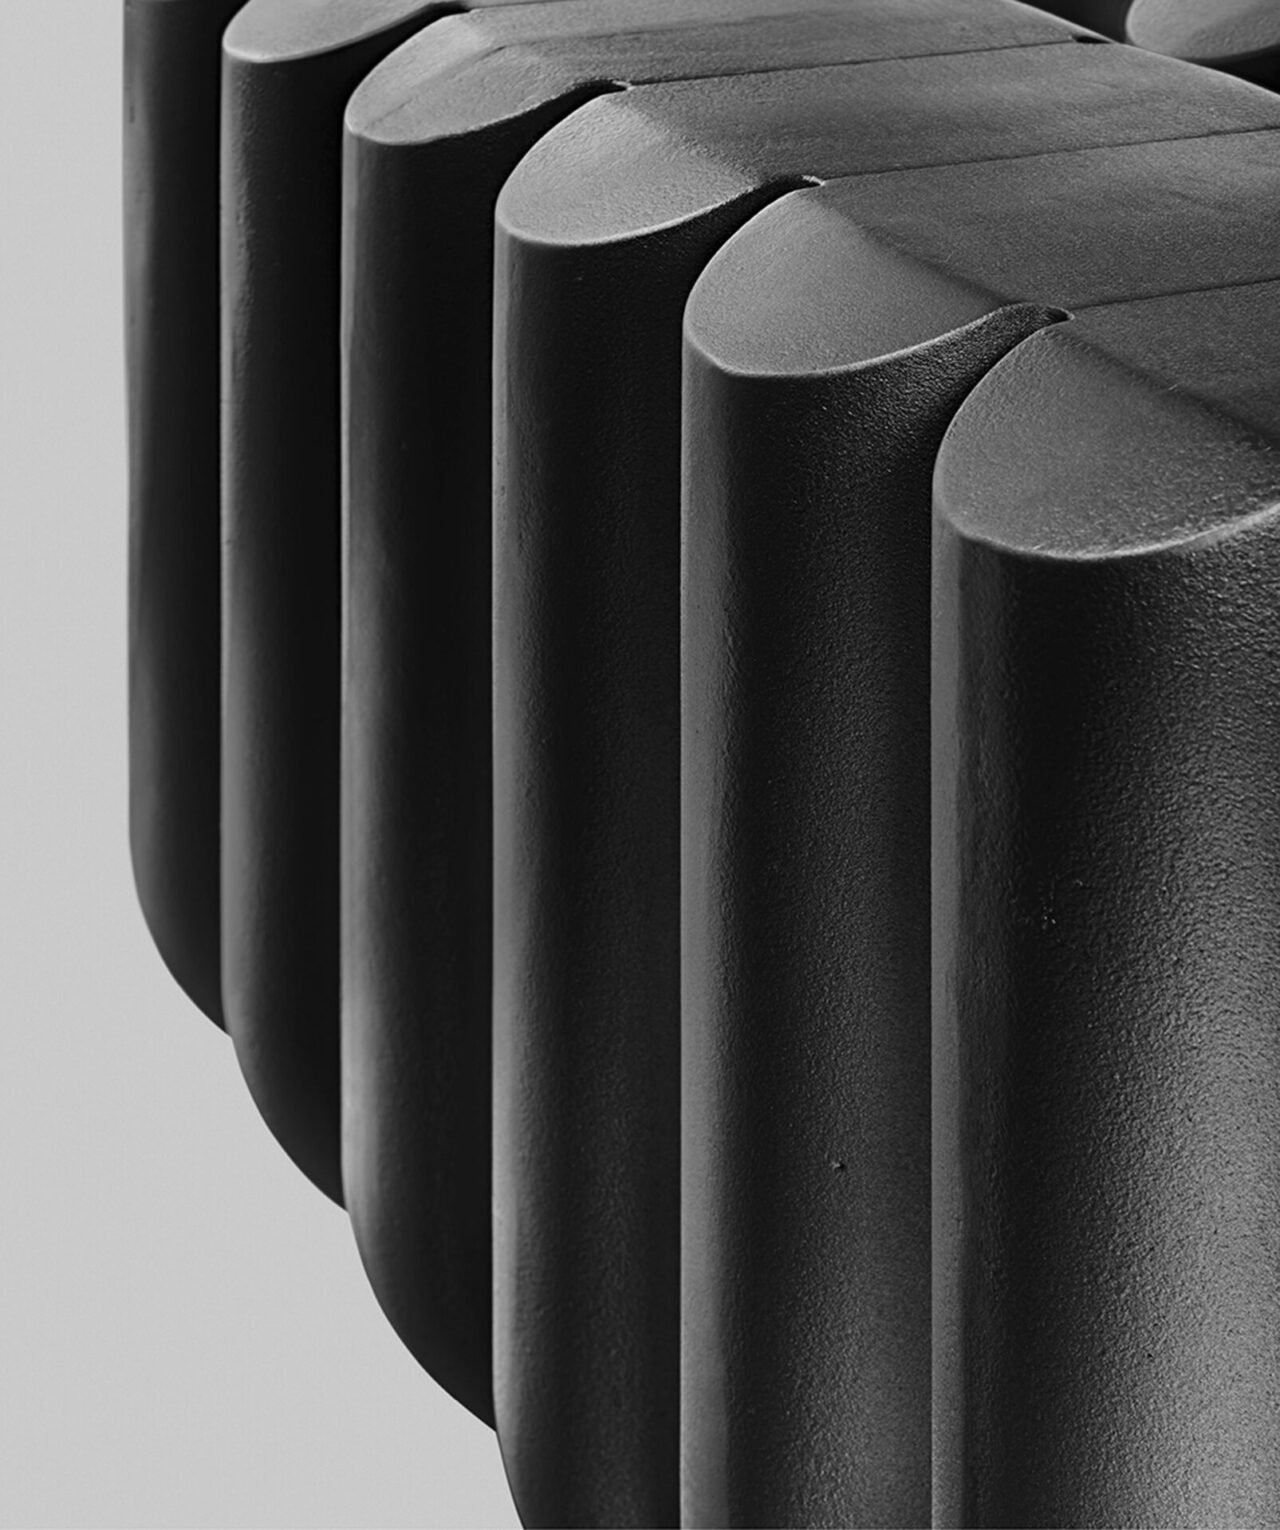 B&M : détail du radiateur en fonte anthracite avec de larges modules arrondis. On voit le dessus assez large pour s'assoir dessus. Design Suisse Bertille Laguet. Fabrication française.